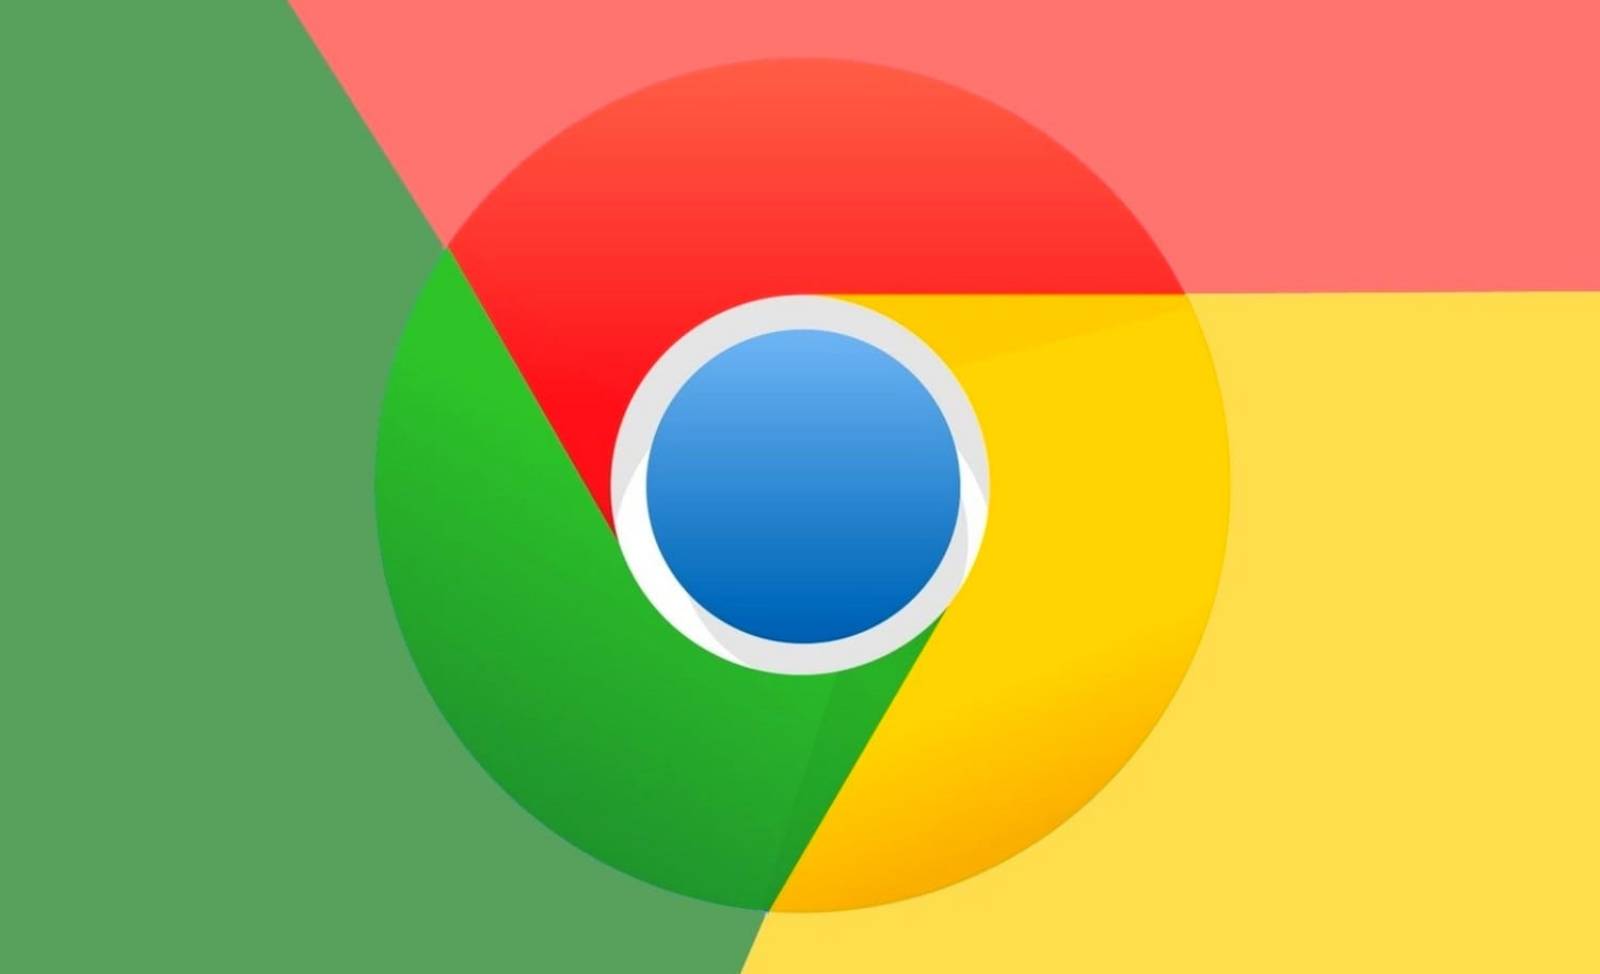 JavaScript di Google Chrome